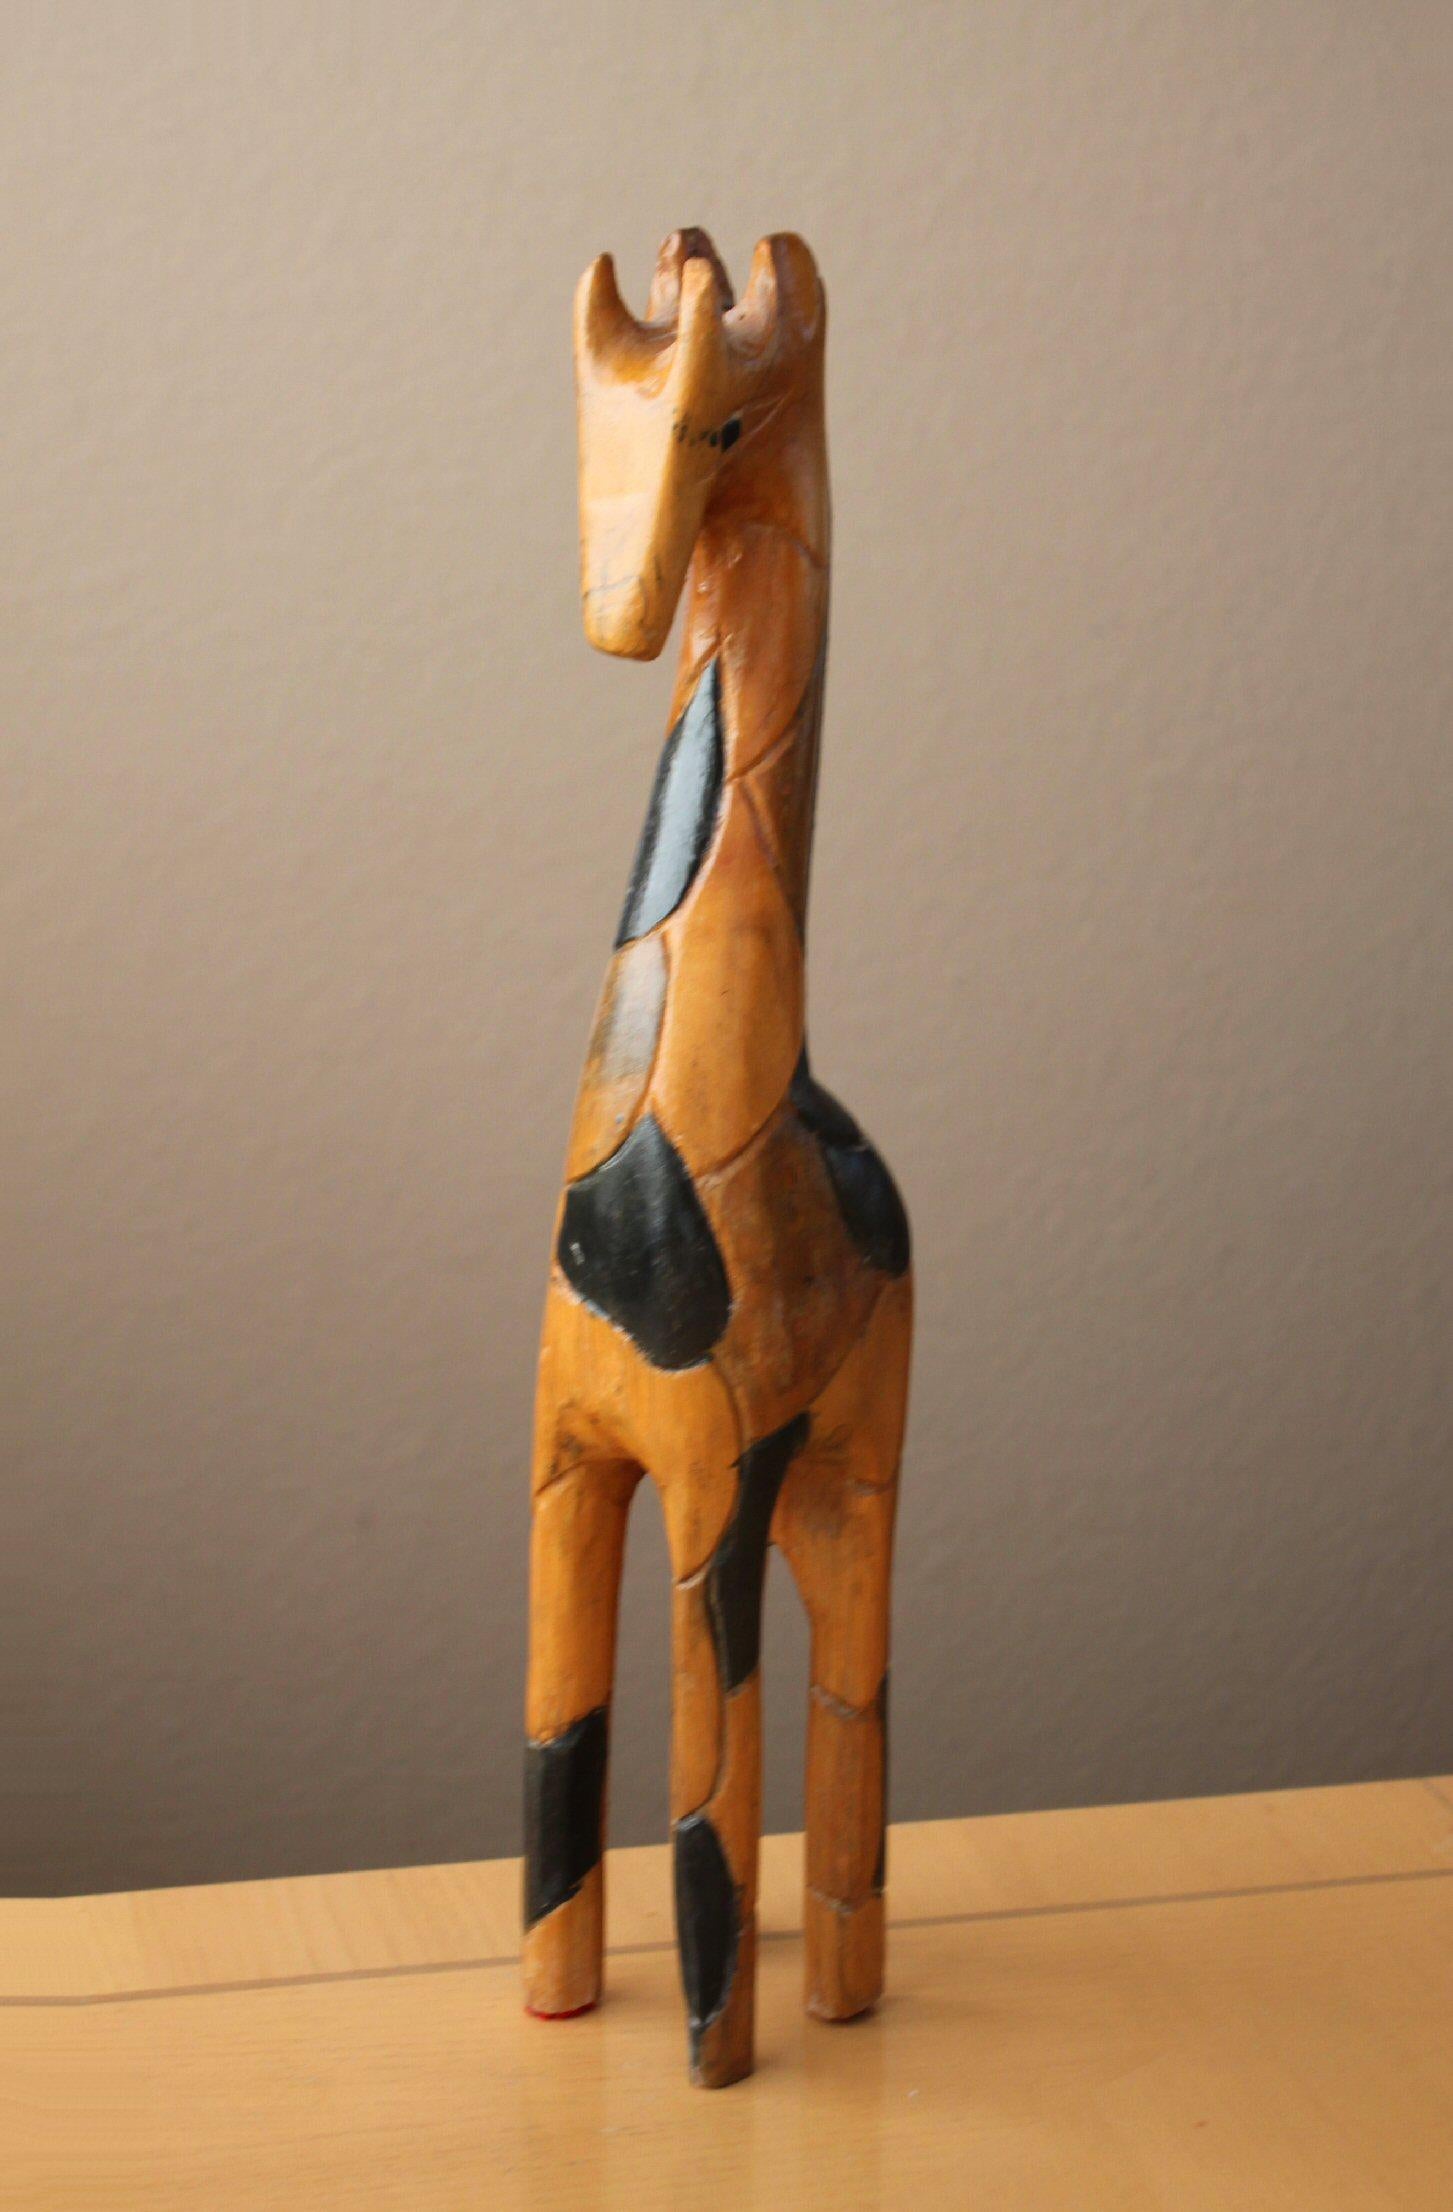 Einfach atemberaubend!

Mid Century Modern
Abstrakte Giraffe-Skulptur
Handgeschnitzt & polychromiert

20